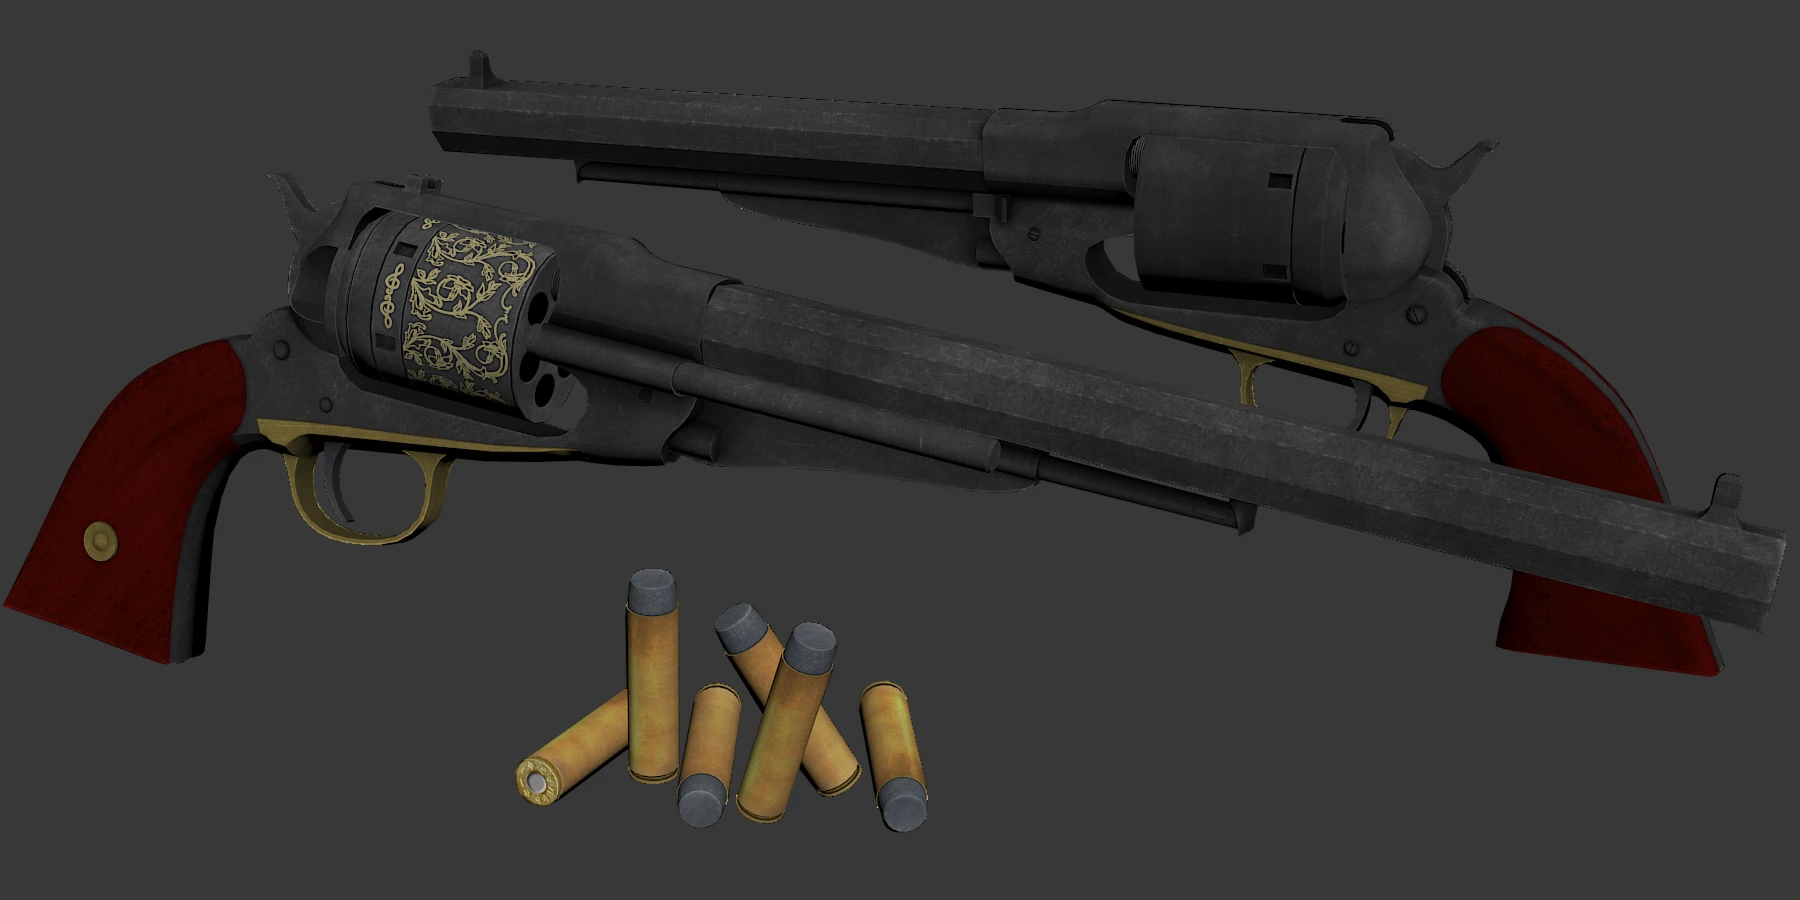 Lethal company shotgun. Ремингтон 1858 револьвер 44 калибра. Револьверы дикого Запада Ремингтон. Ремингтон револьвер 1873. Remington 1858 Fallout 4.